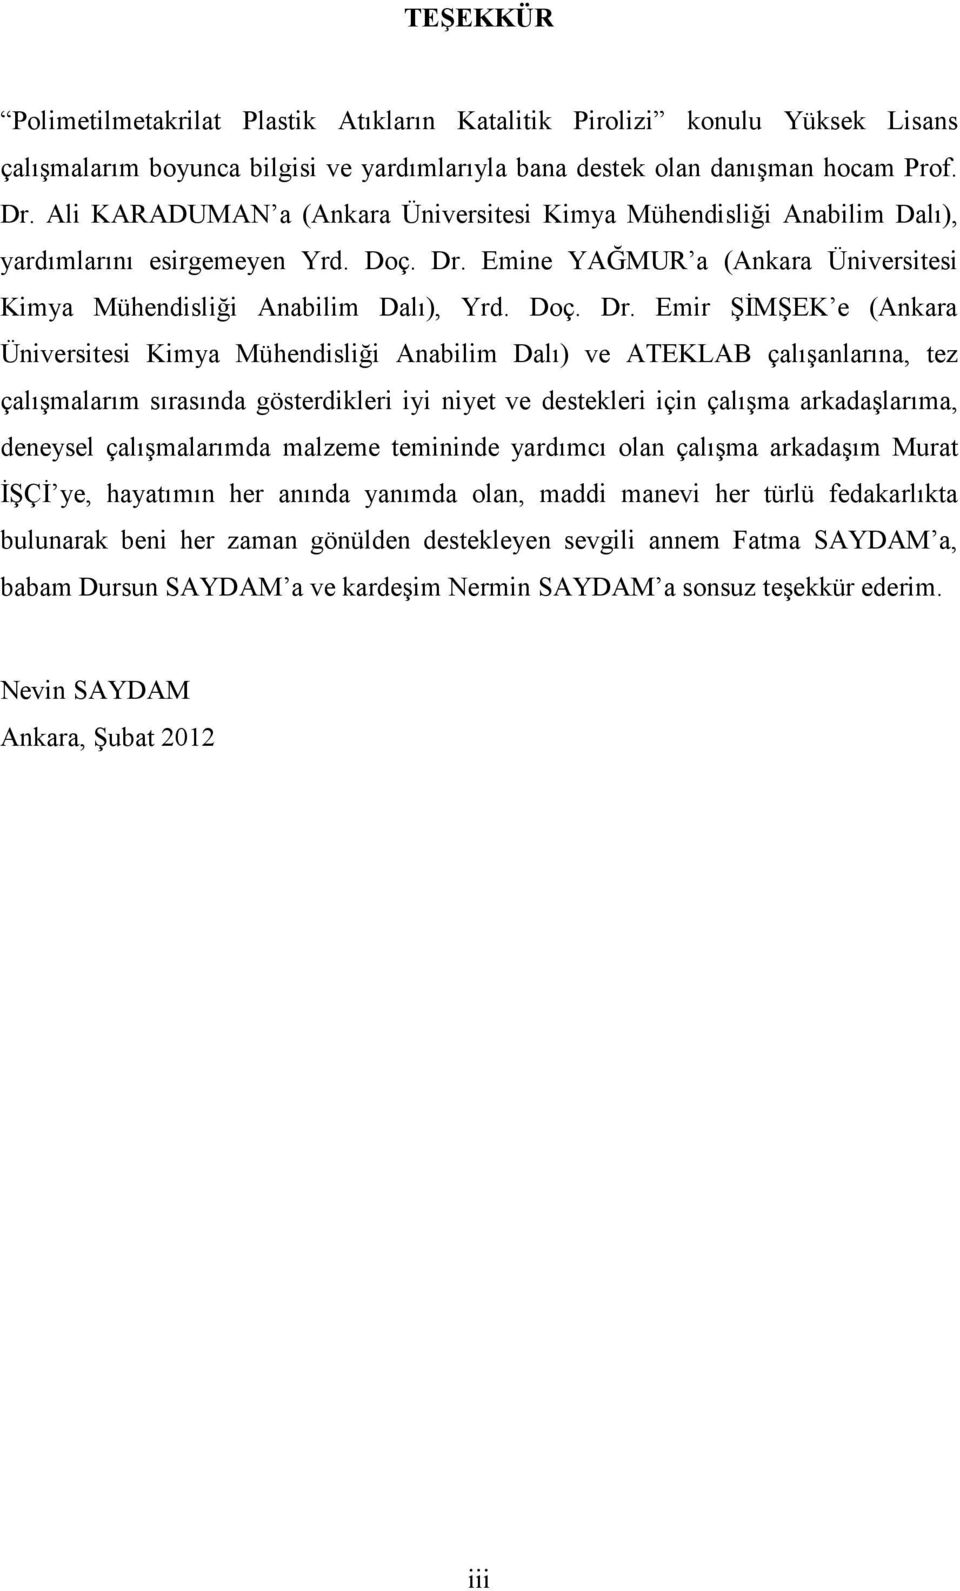 Emine YAĞMUR a (Ankara Üniversitesi Kimya Mühendisliği Anabilim Dalı), Yrd. Doç. Dr.